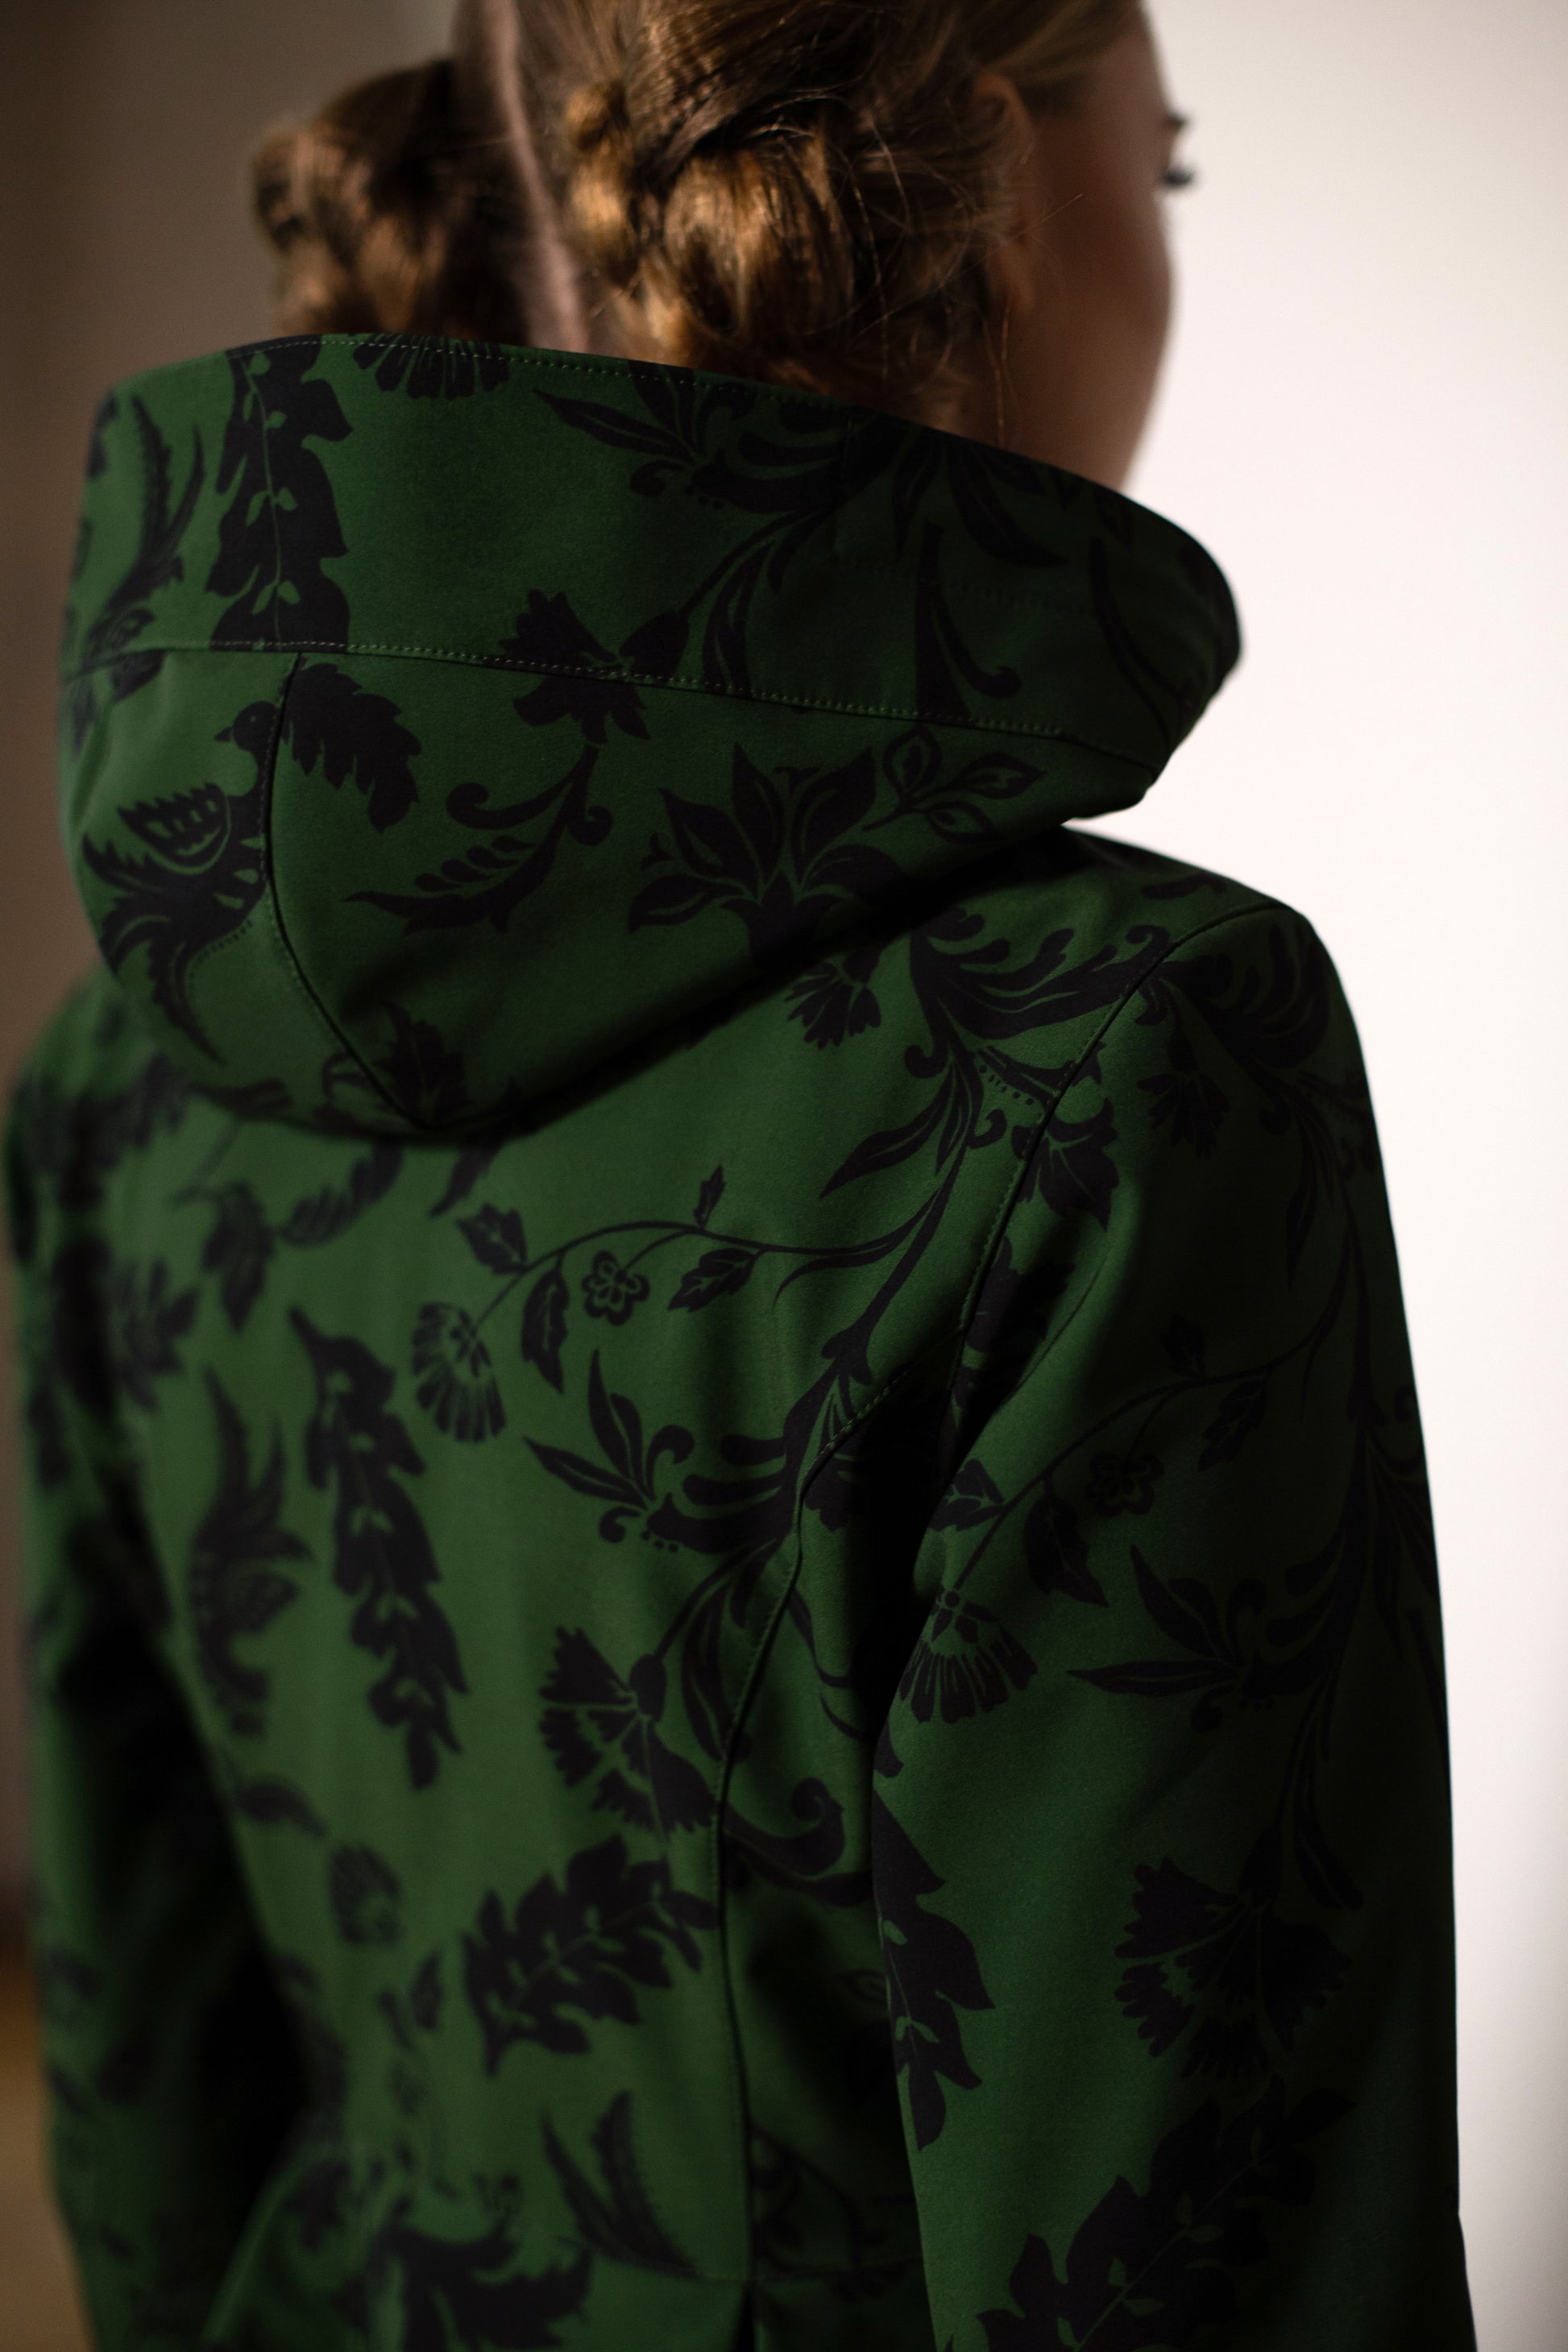 Waterproof dark green coat for women with hood